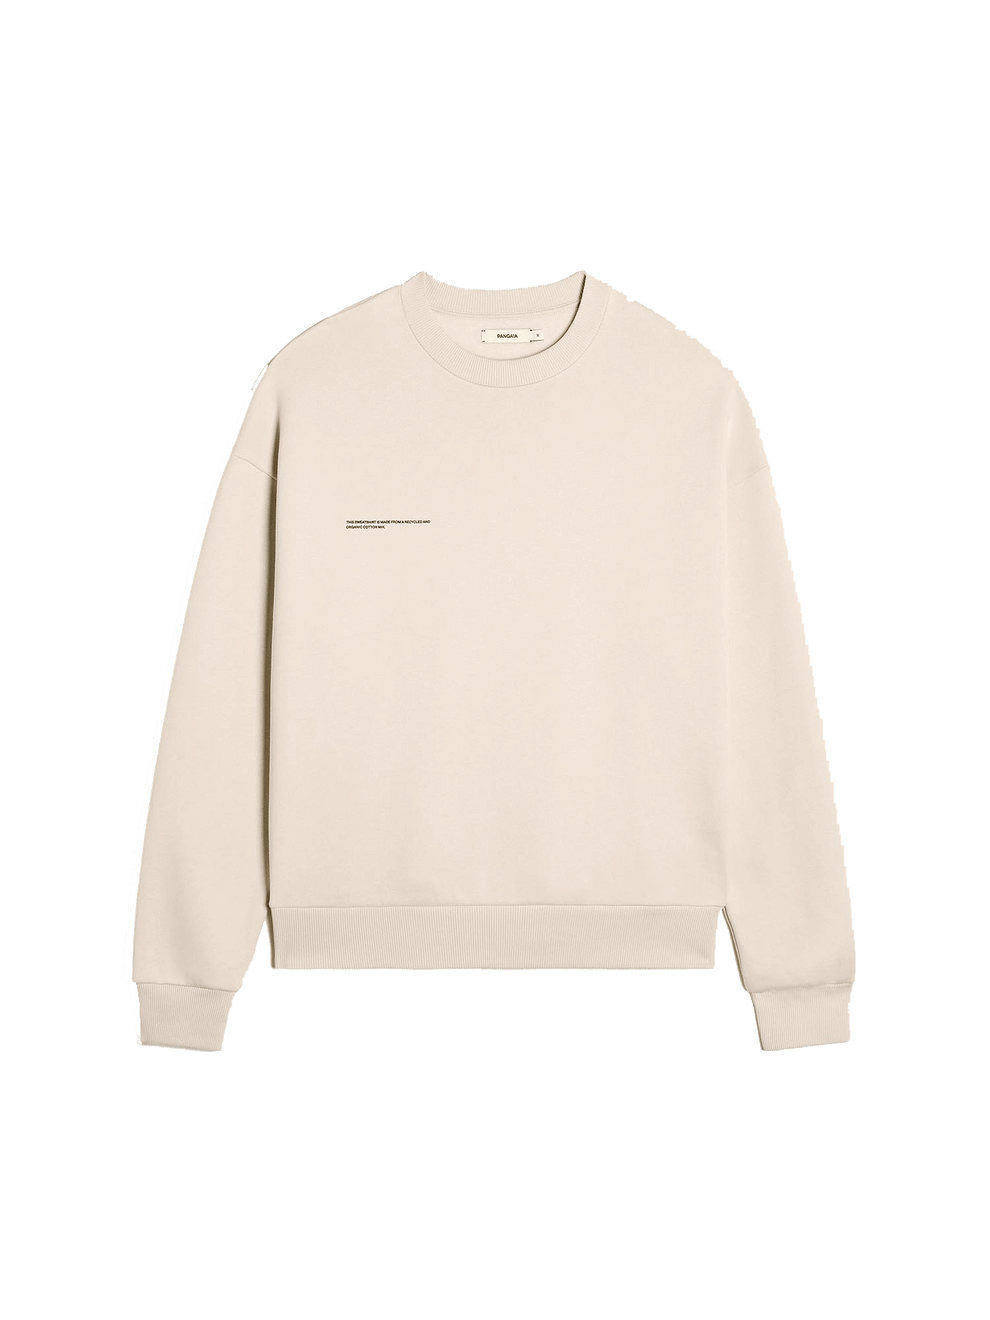 365 Signature Sweatshirt - Sand - Pangaia